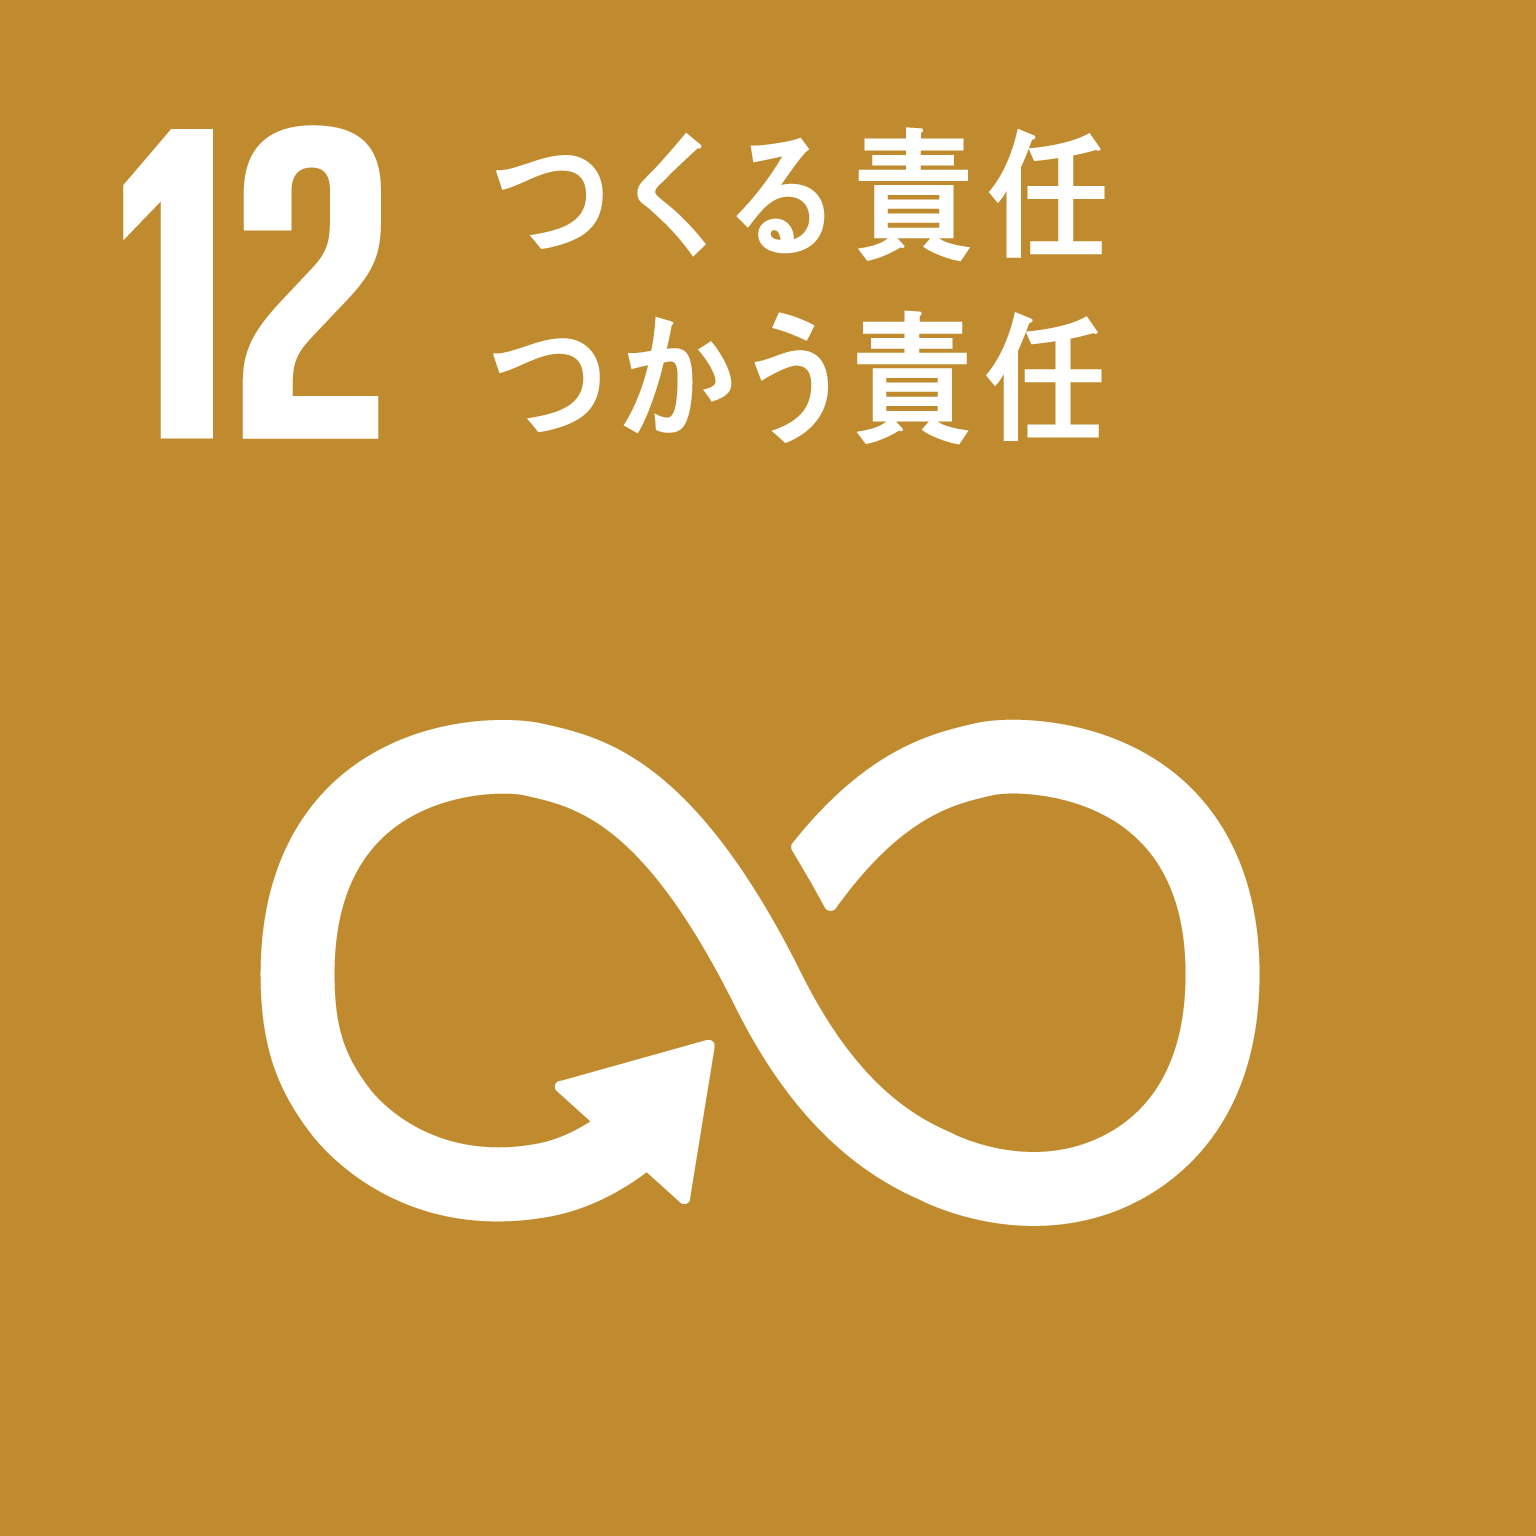 目標12つくる責任つかう責任のロゴ